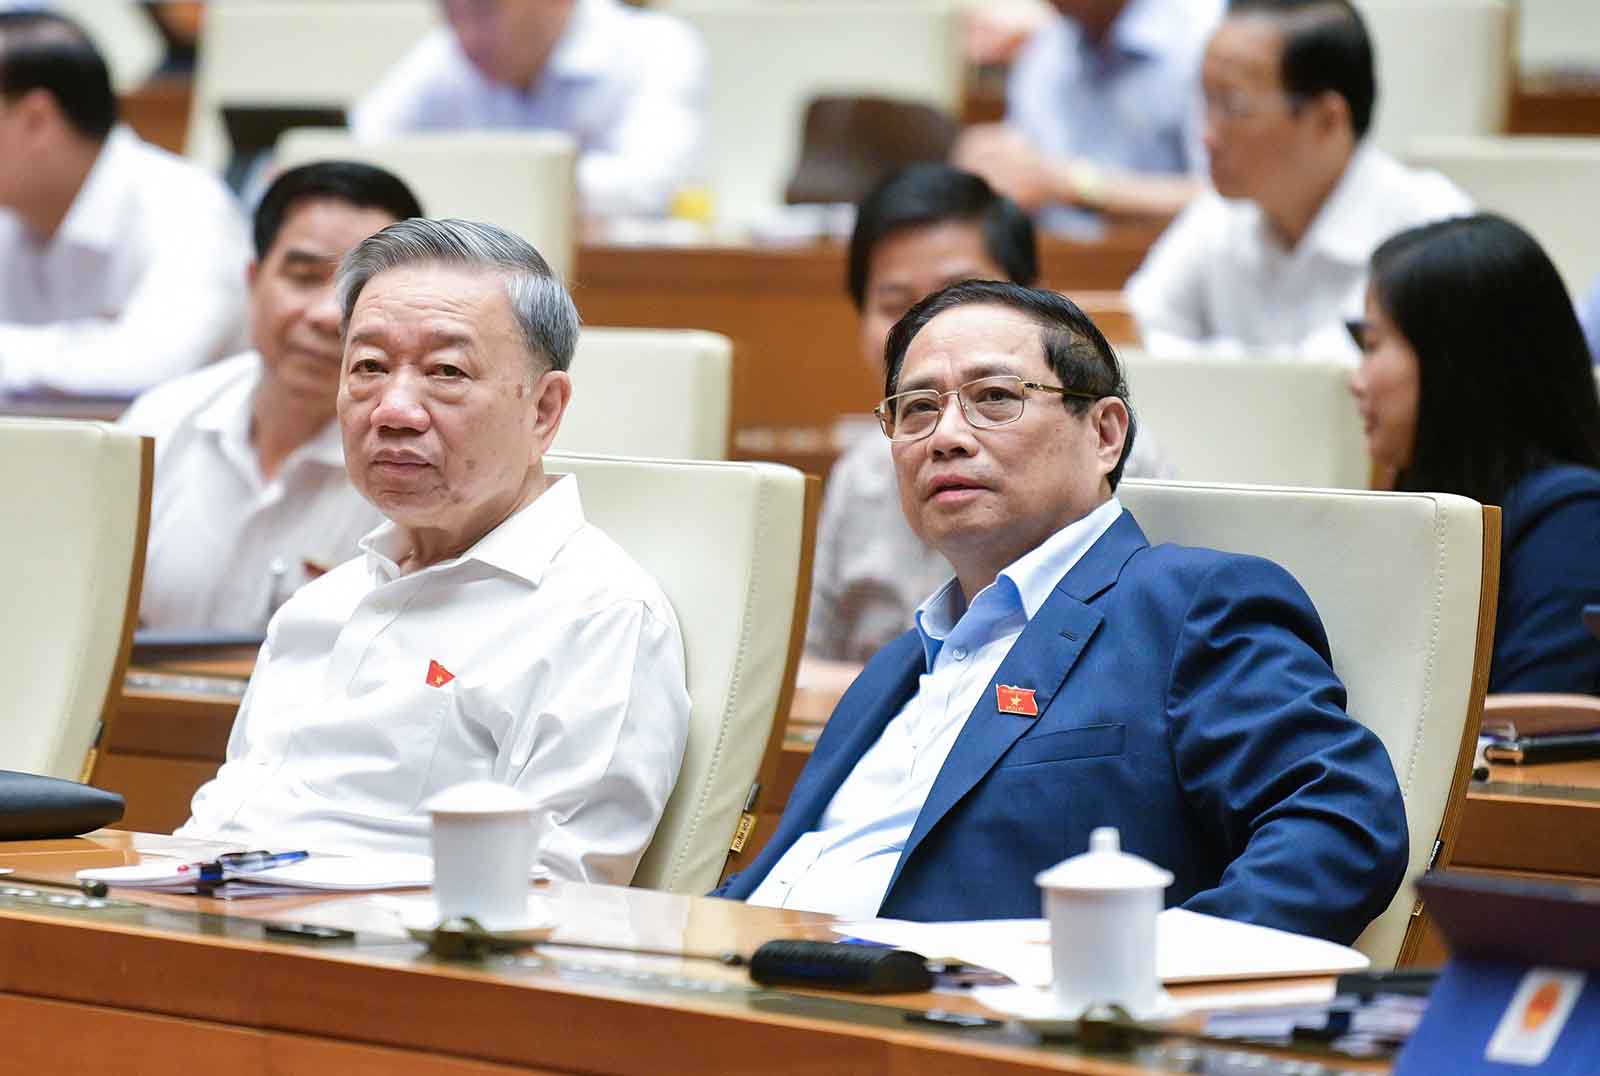 Chủ tịch nước Tô Lâm và Thủ tướng Chính phủ Phạm Minh Chính tham dự phiên họp sáng 25.5. Ảnh: Quốc hội